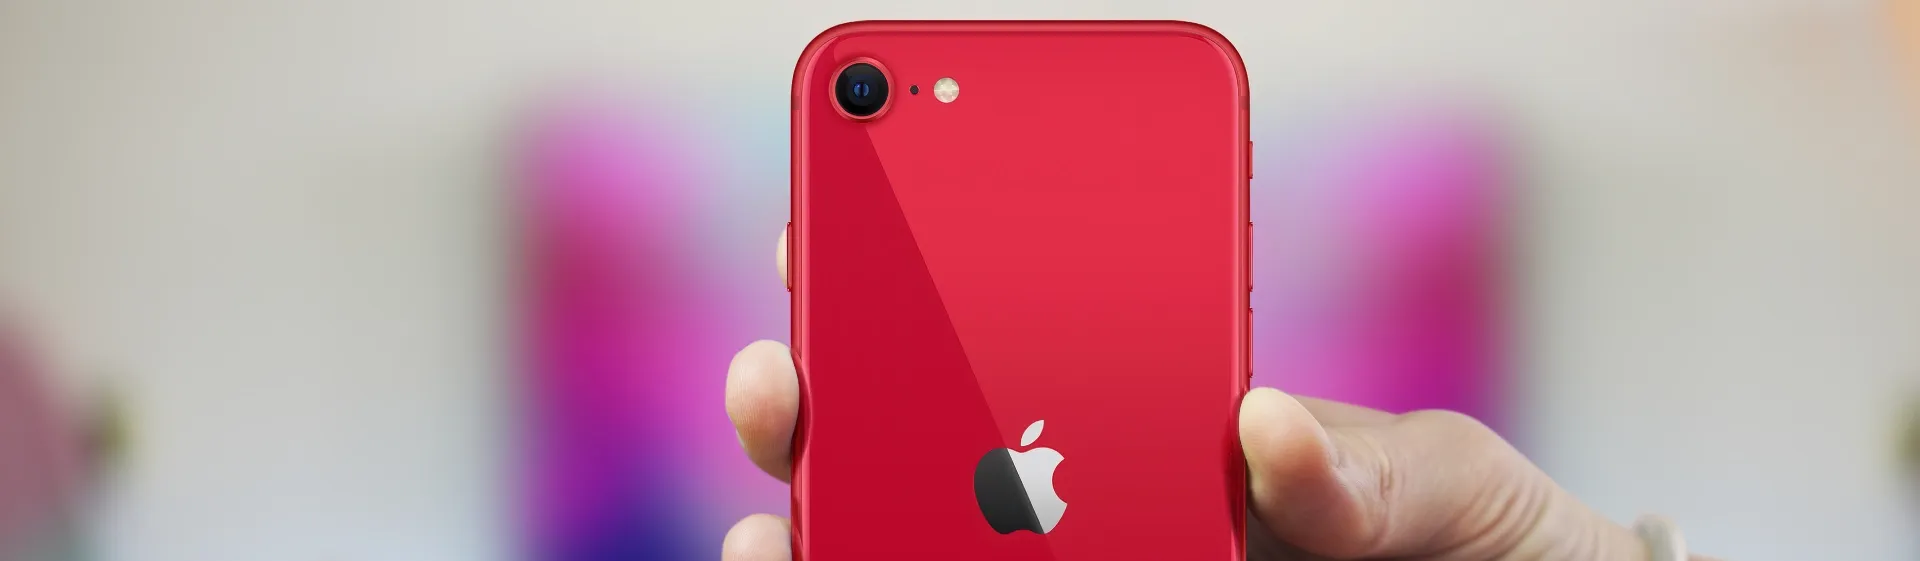 iPhone vermelho: 7 melhores modelos do Product Red da Apple